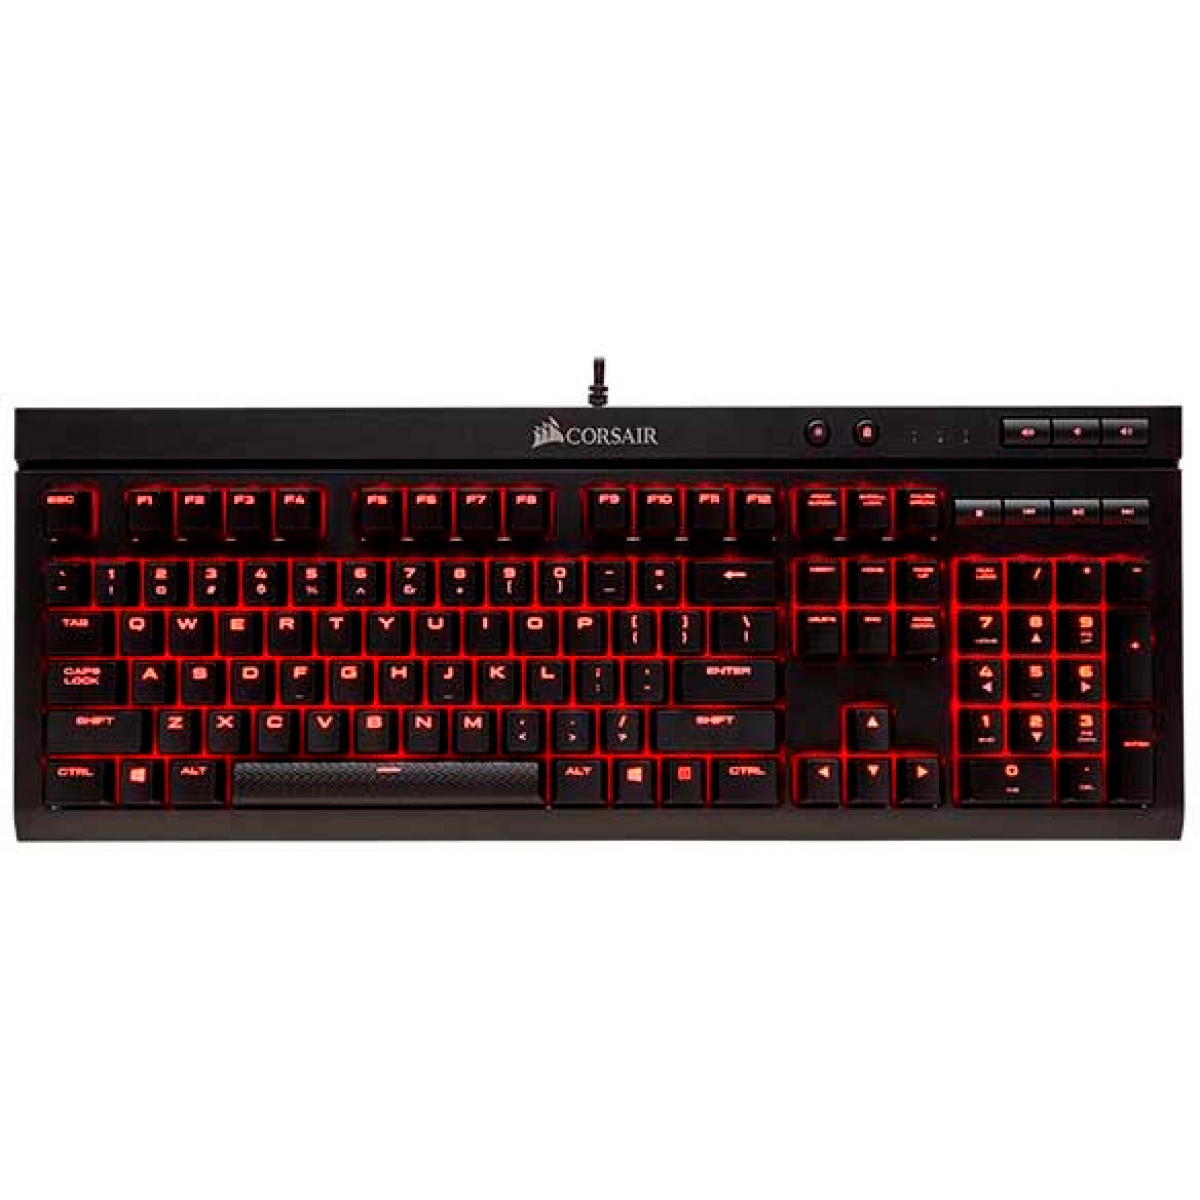 Teclado Mecânico Gamer Corsair K68 Switch Cherry MX Red CH-9102020-BR LED Vermelho ABNT2